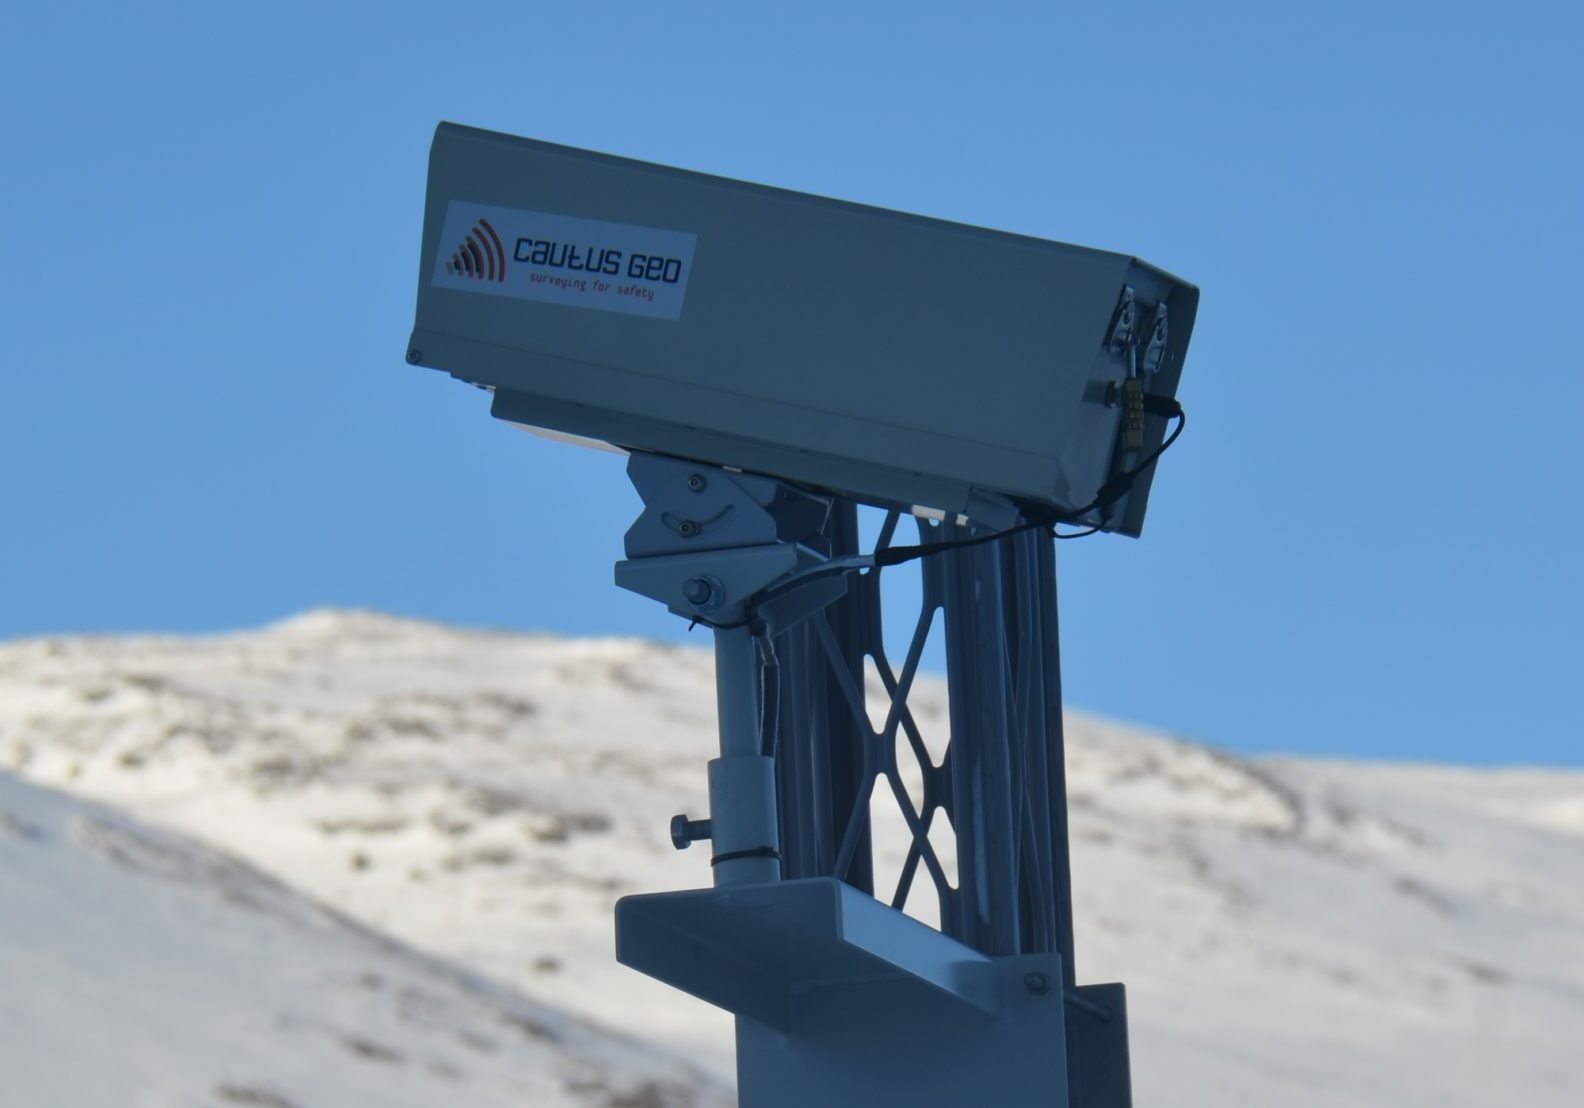 cautus kamera fjernovervåking fanger fjellsprenging, snøskred og mer